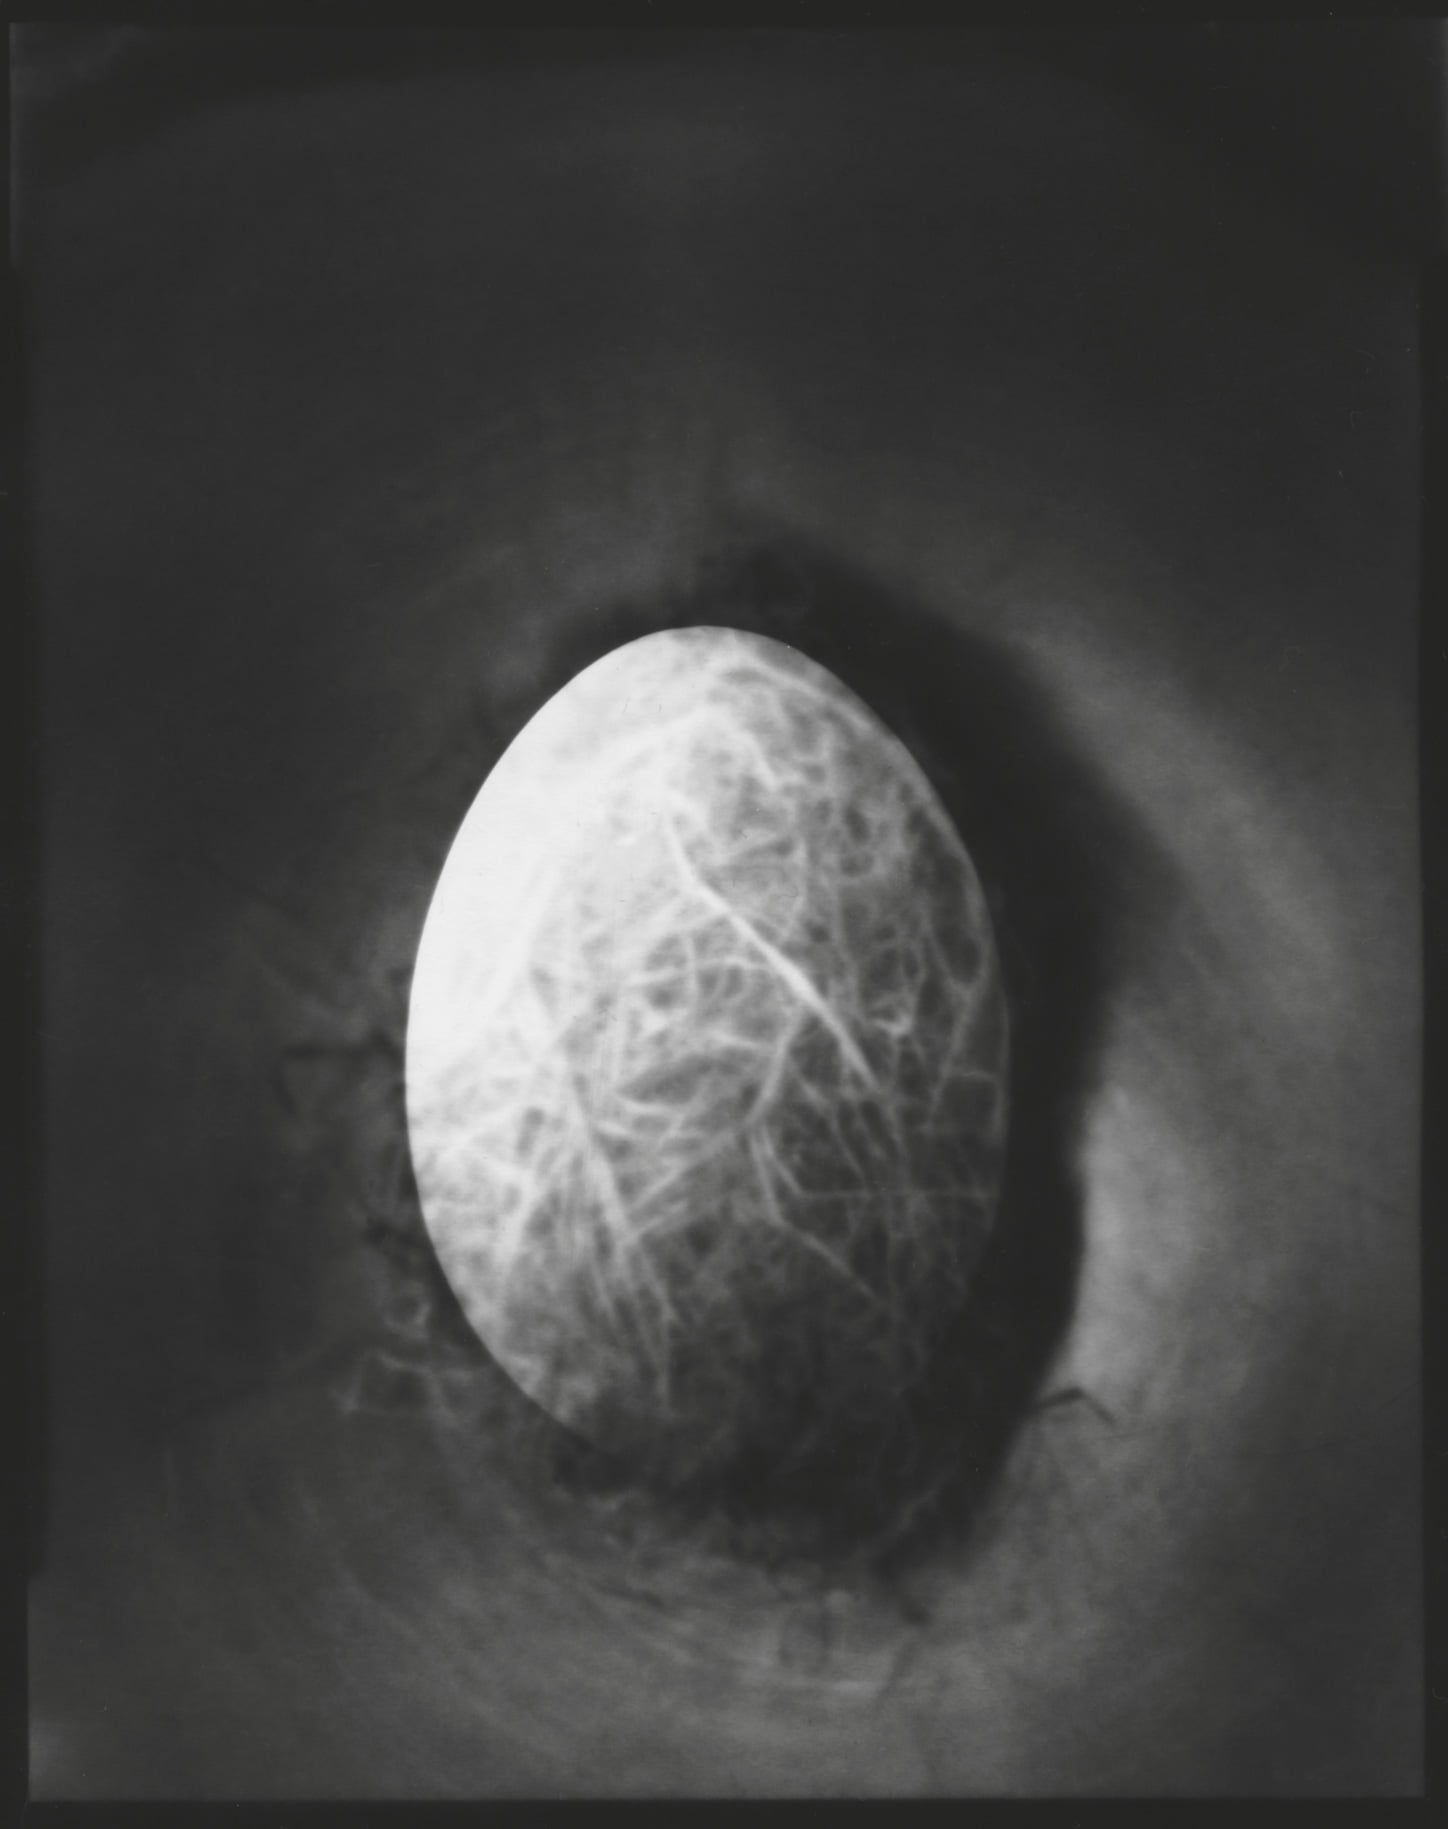 Tine Edel | Das Ei, 2016 | Belichtung eines 4 x 5“ Papiernegativ, 13 x 18 cm analoges Fotopapier von Wephota